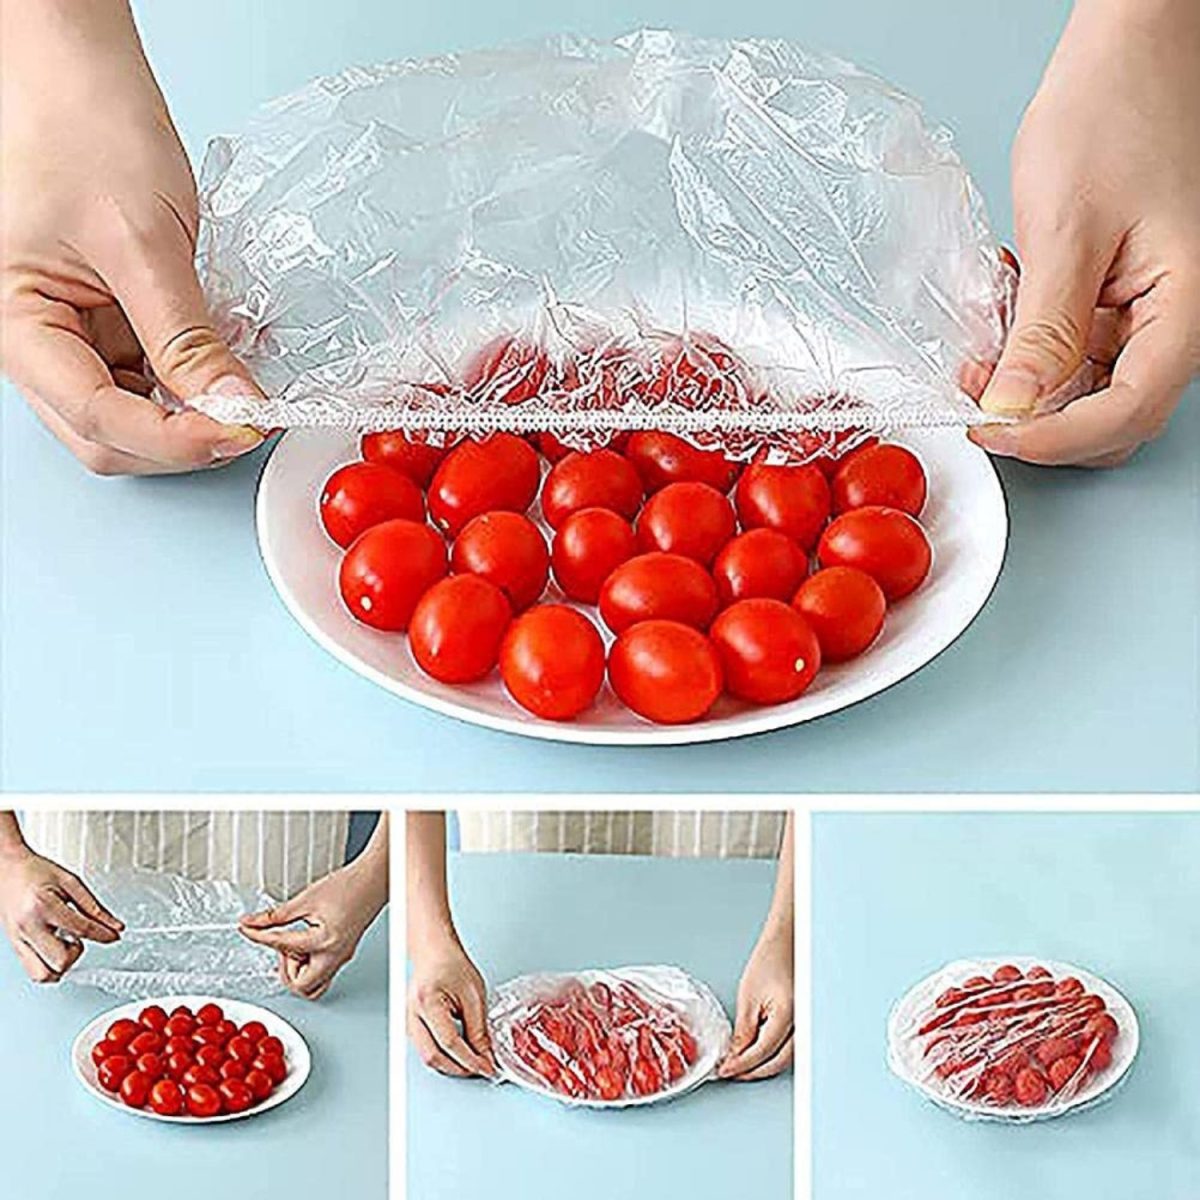 نحوه نگهداری میوه ها-کیسه های شفاف